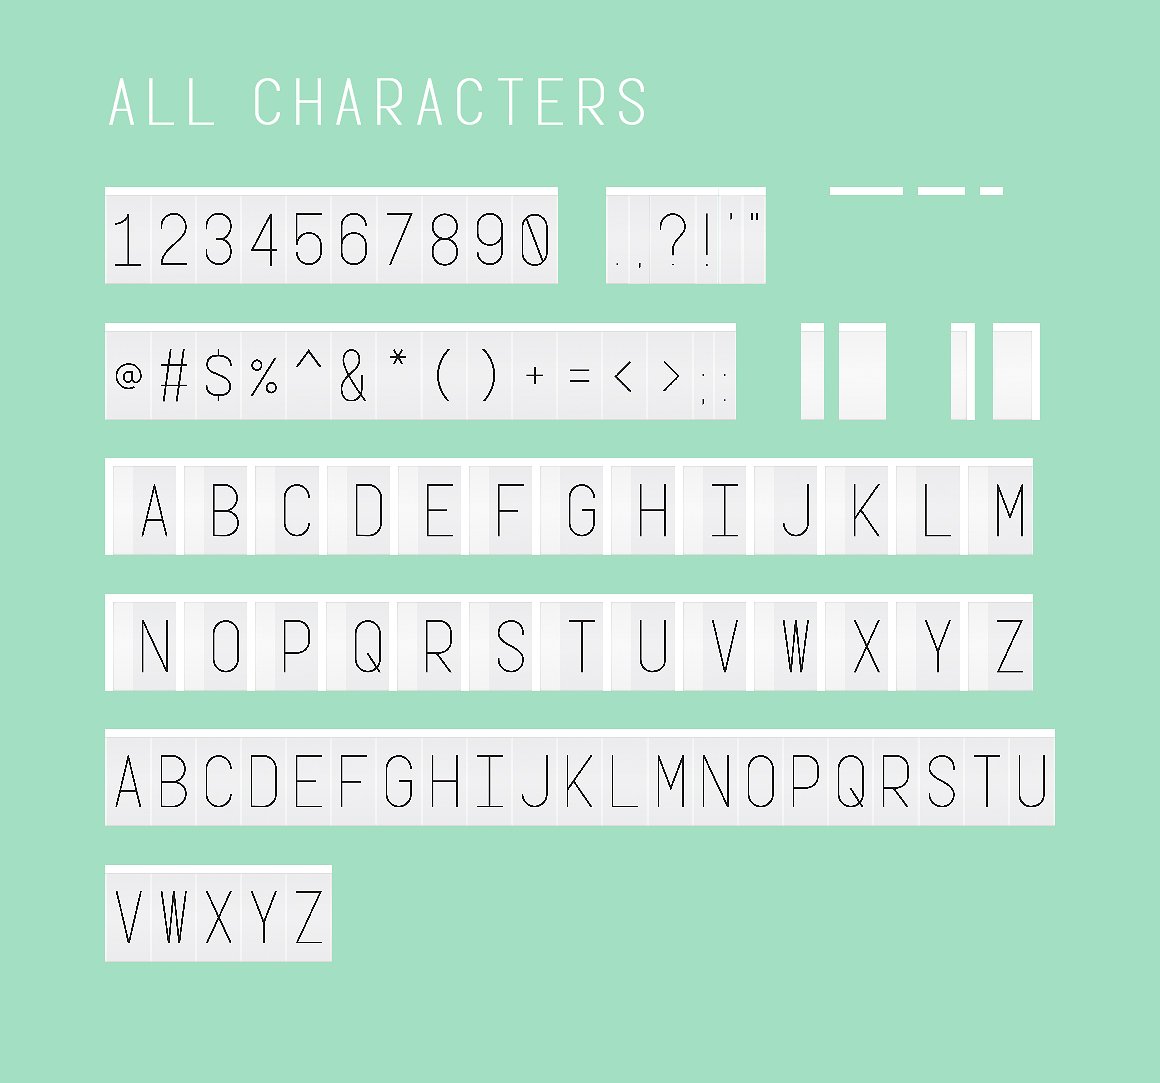 粉色小清新字母Lightbox Color Font #17